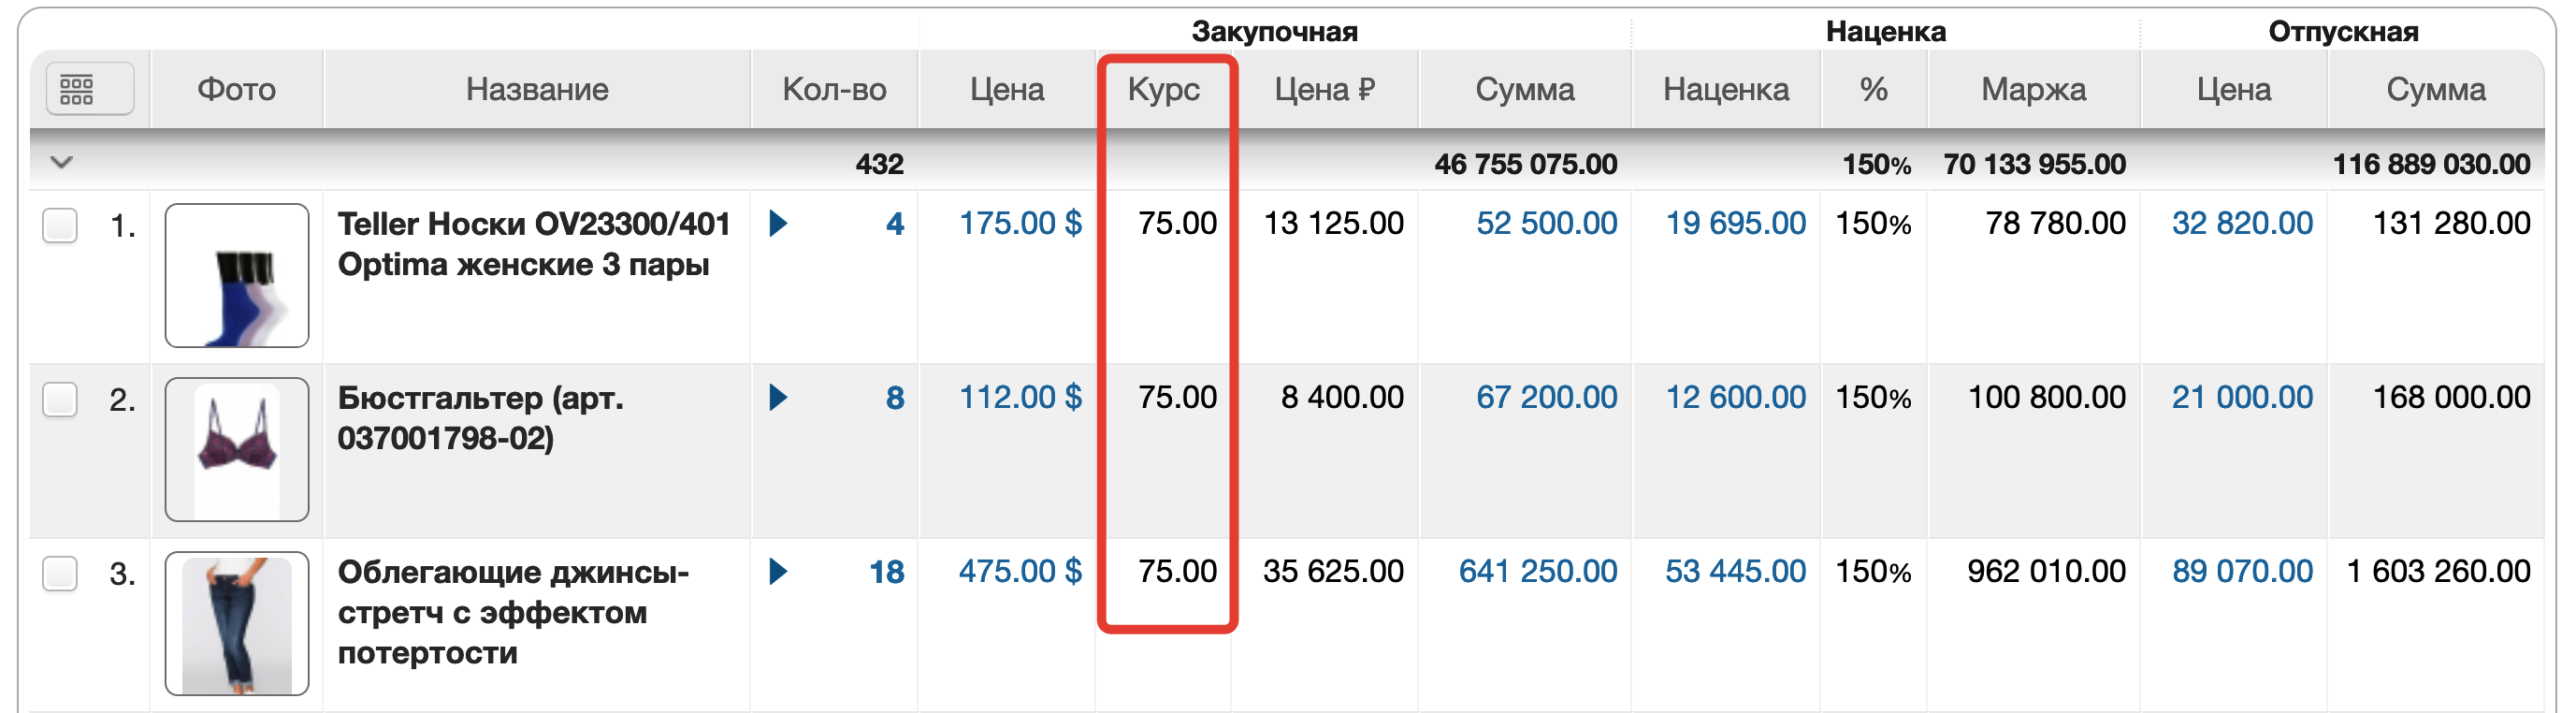 Пример таблицы с товарами в валюте